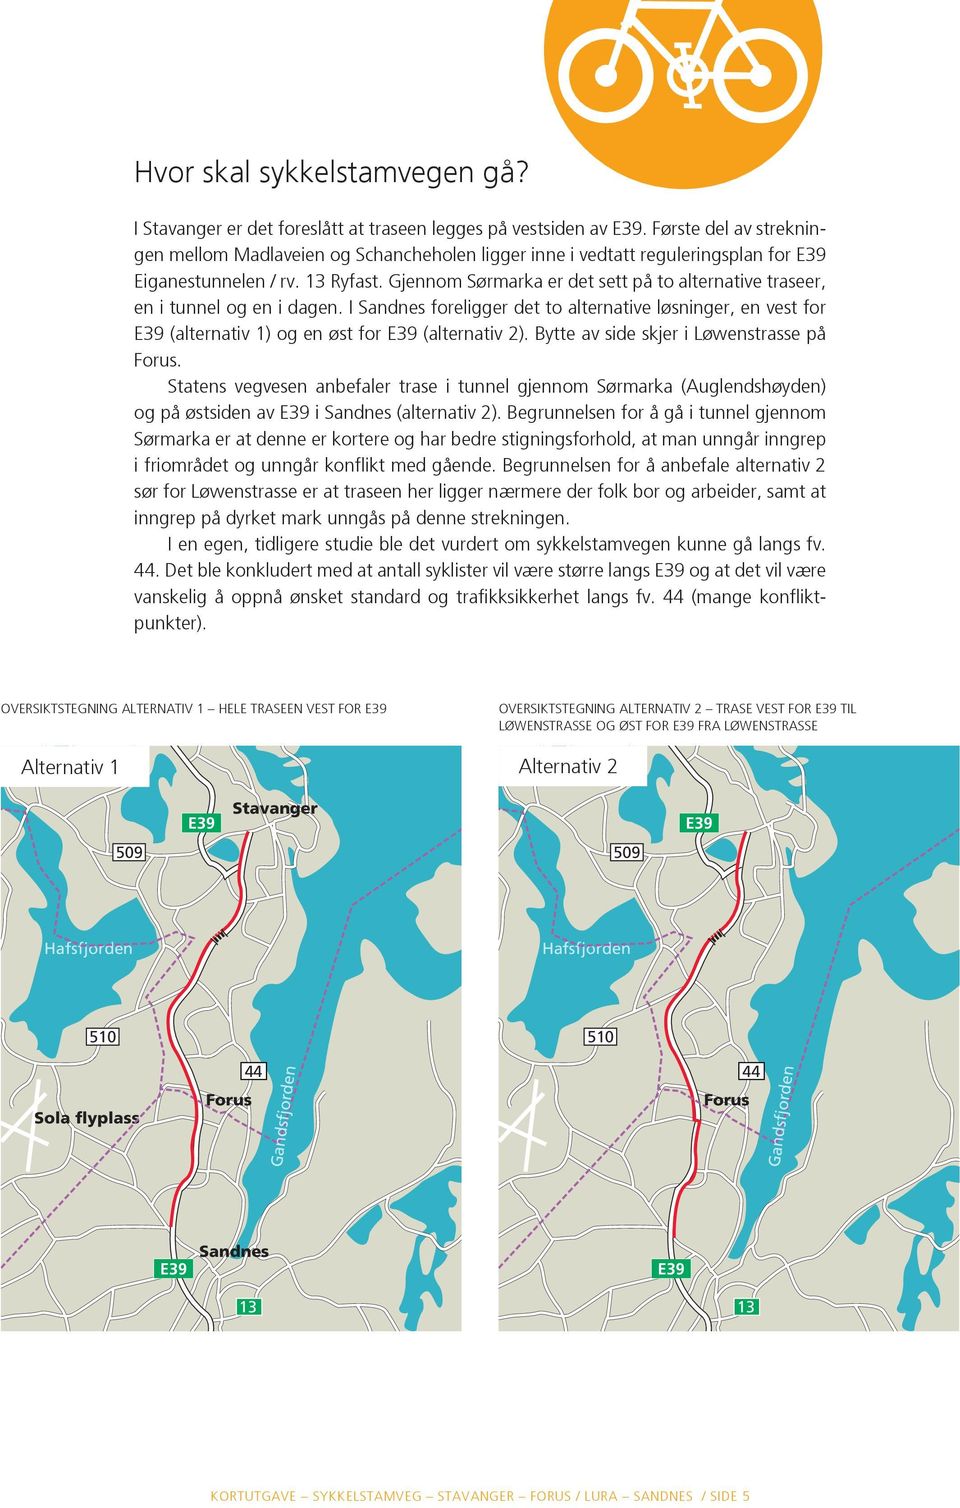 Gjennom Sørmarka er det sett på to alternative traseer, en i tunnel og en i dagen. I Sandnes foreligger det to alternative løsninger, en vest for E39 (alternativ 1) og en øst for E39 (alternativ 2).